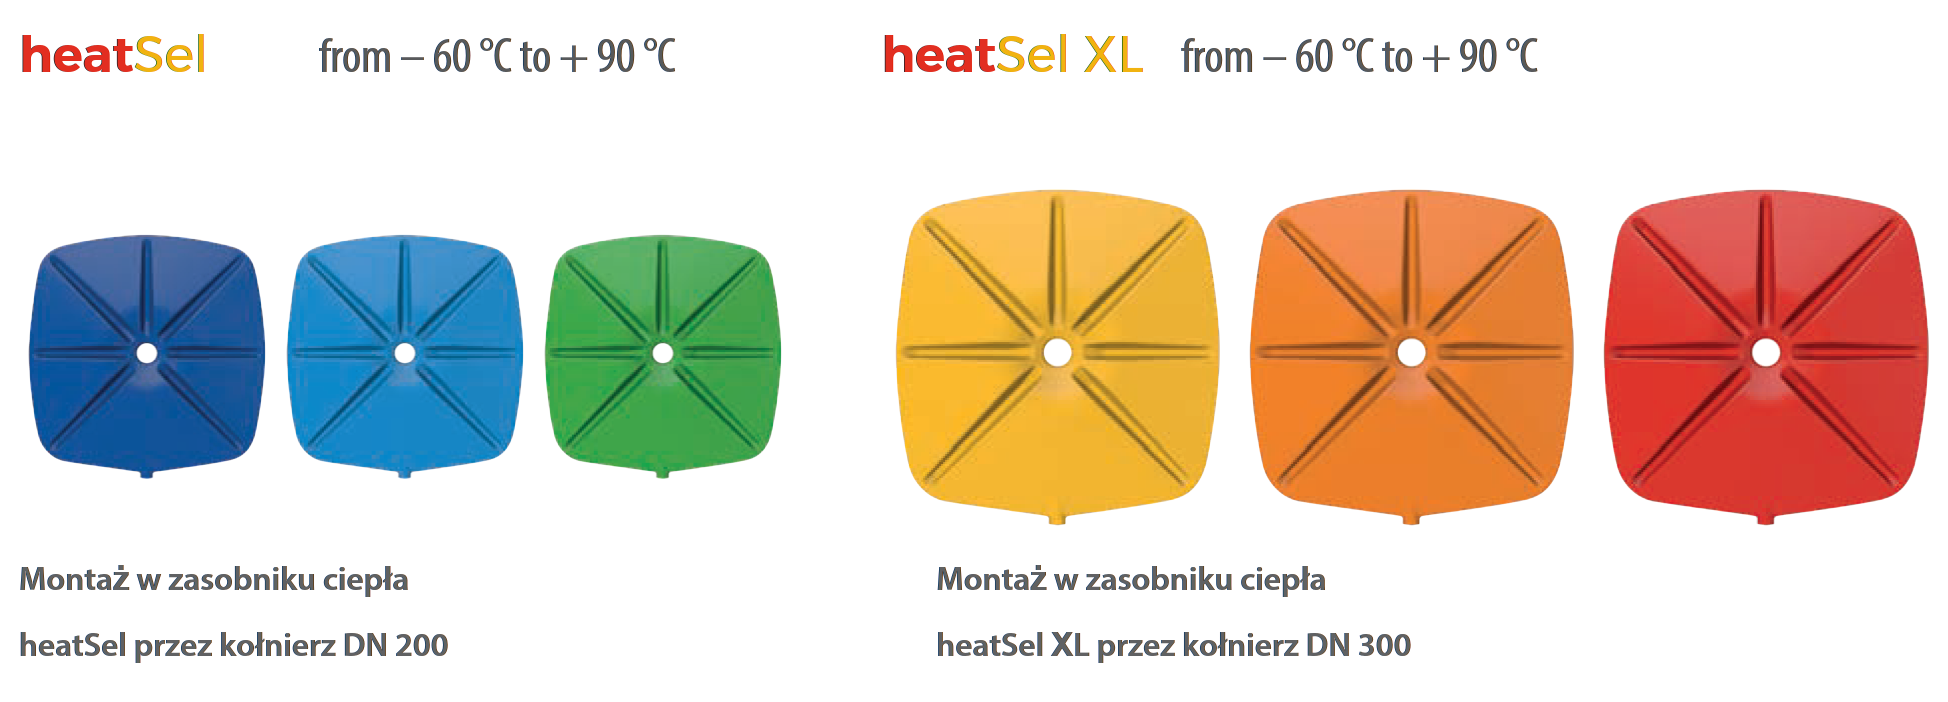 heatSeal zakres stosowania temperatur